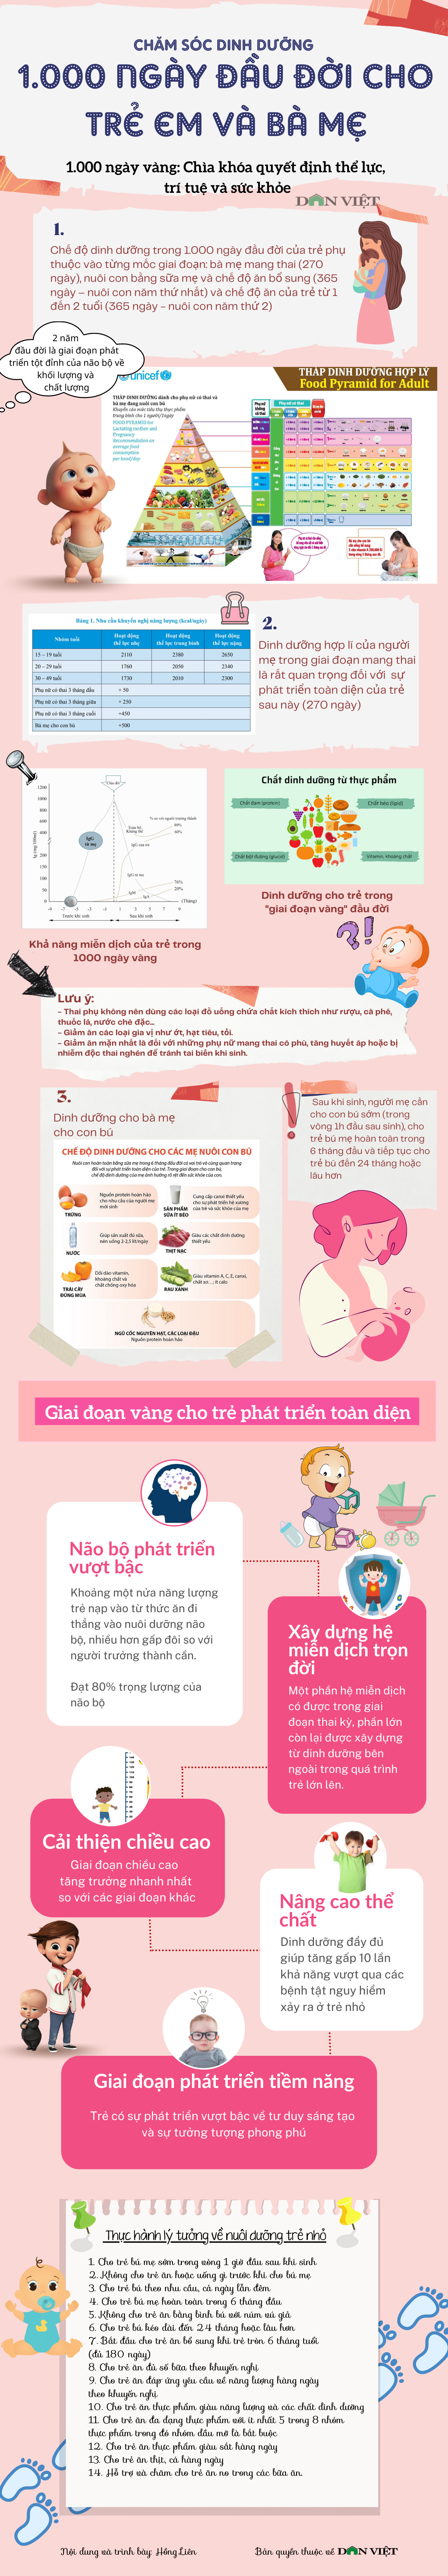 Infographic: Chăm sóc dinh dưỡng 1.000 ngày đầu đời cho trẻ em và bà mẹ - Ảnh 1.